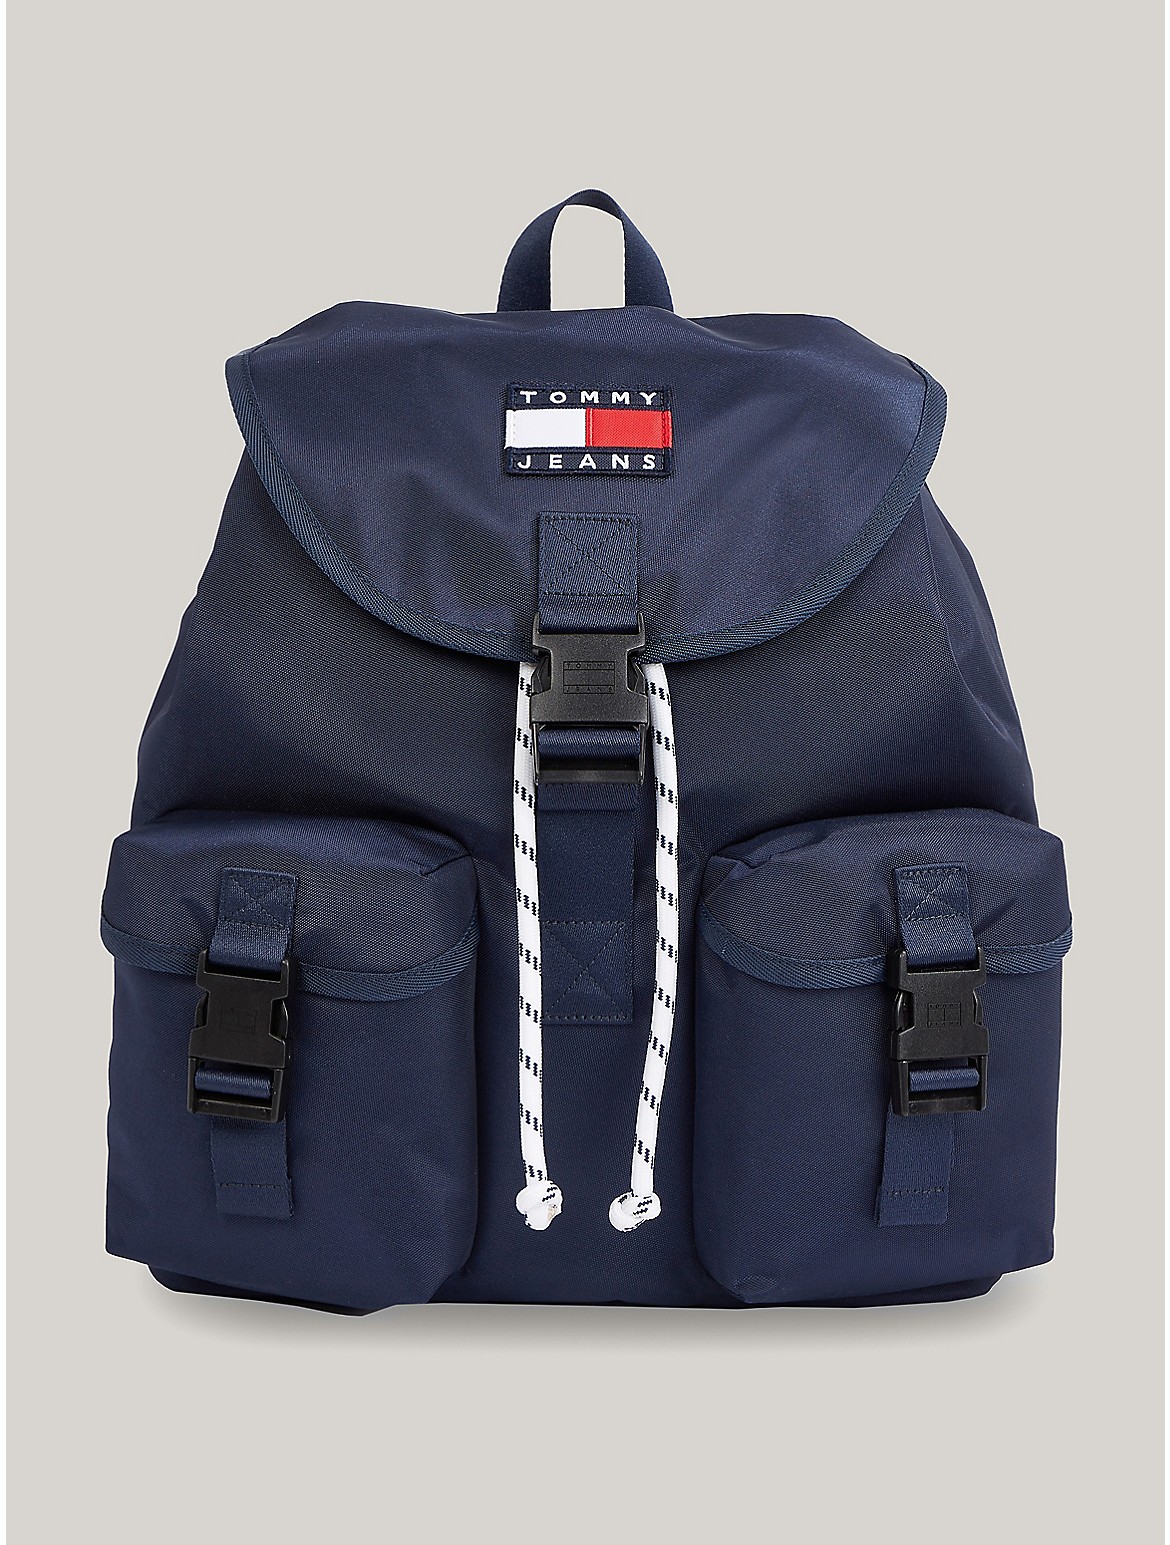 Tommy Hilfiger Men's Heritage Flap Backpack